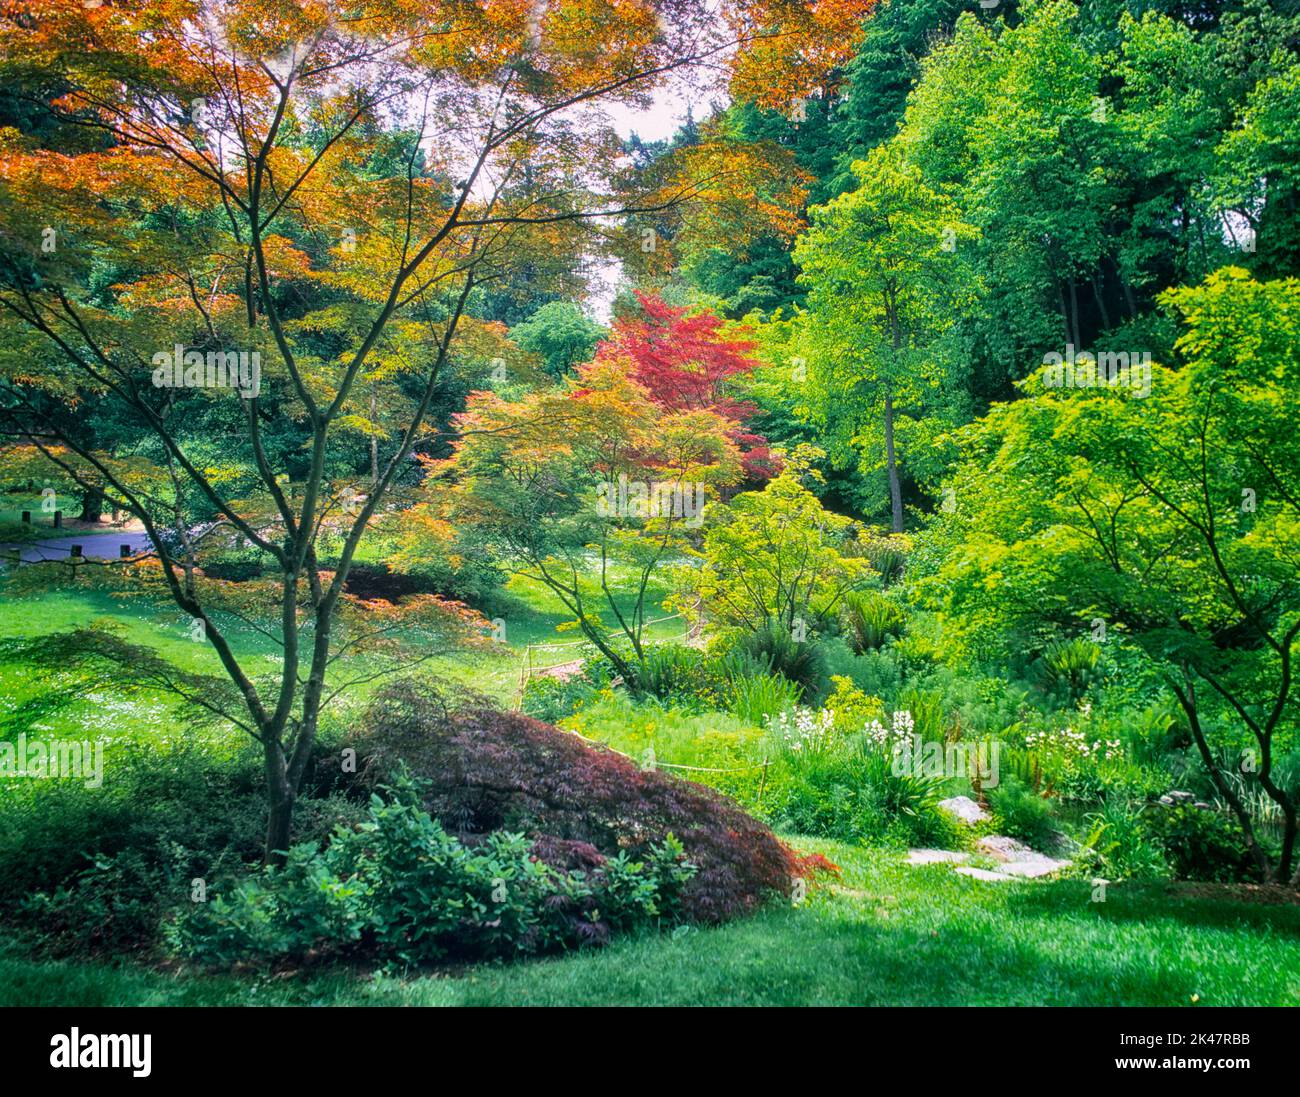 Una variedad de arces japoneses en primavera. Washington Park Arboretum, Seattle, Washington Foto de stock